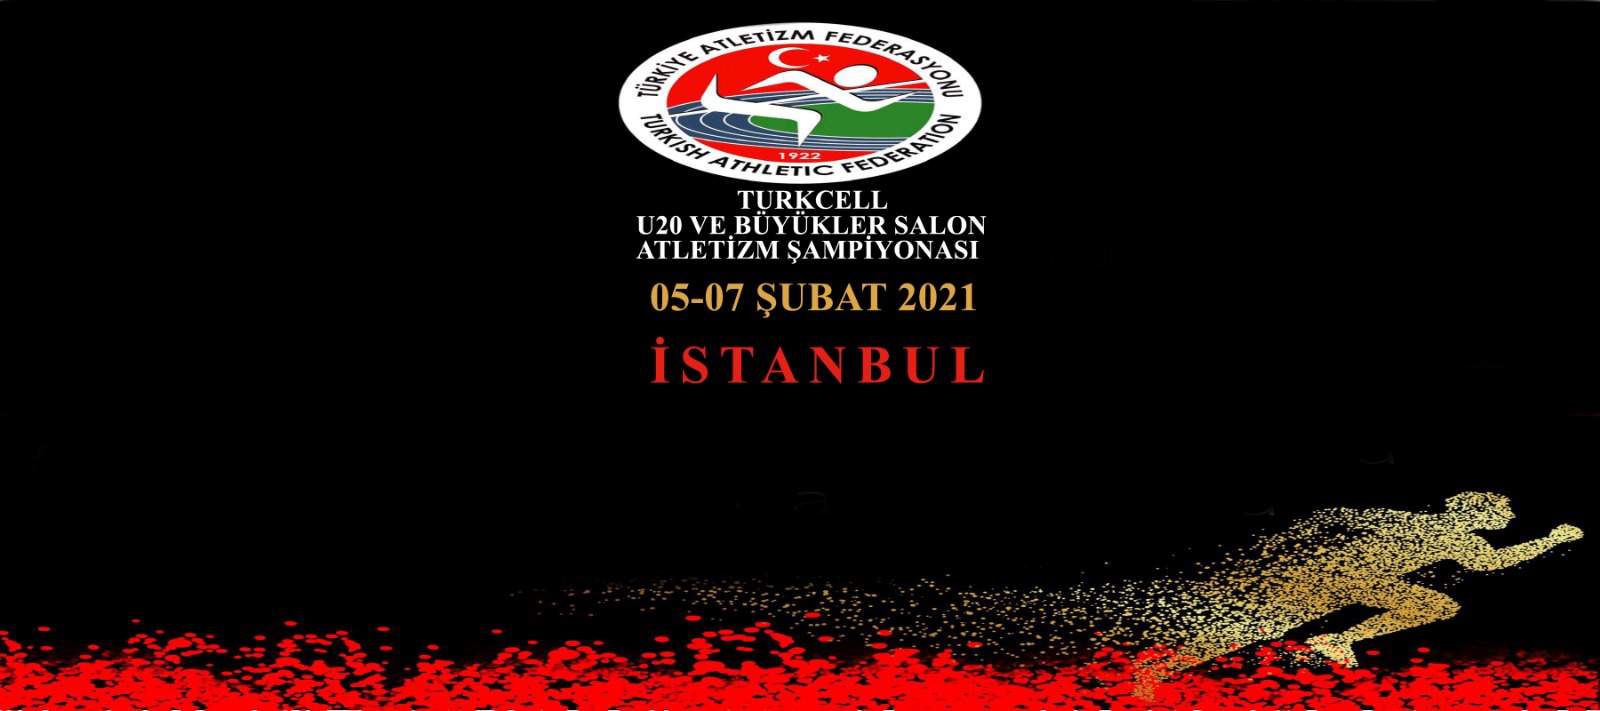 U20 ve Büyükler Turkcell Türkiye Salon Atletizm Şampiyonası: statü ve kayıt-program